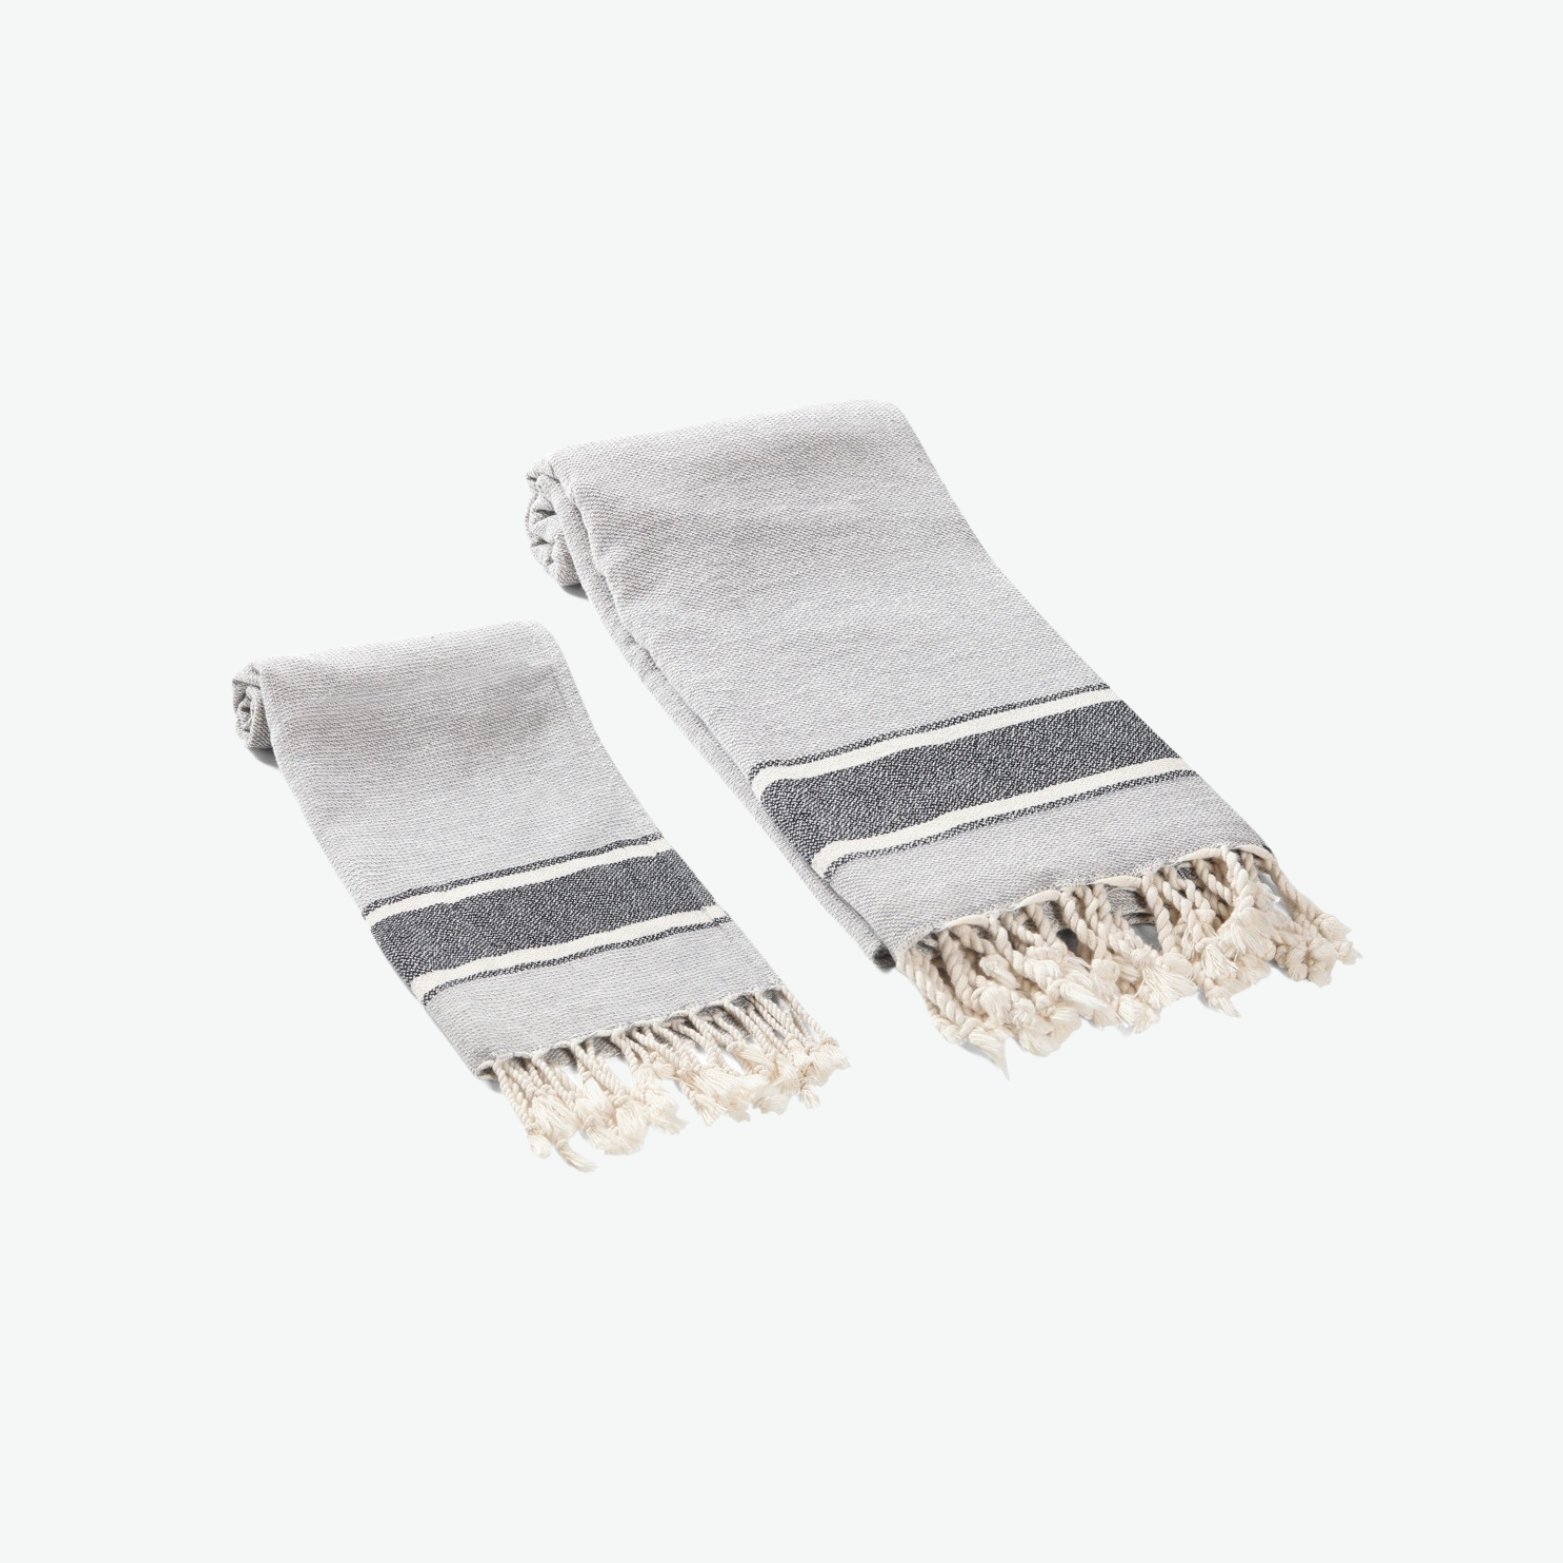 Grey Textured & Striped Kitchen Hand Towel with Tassels.jpg